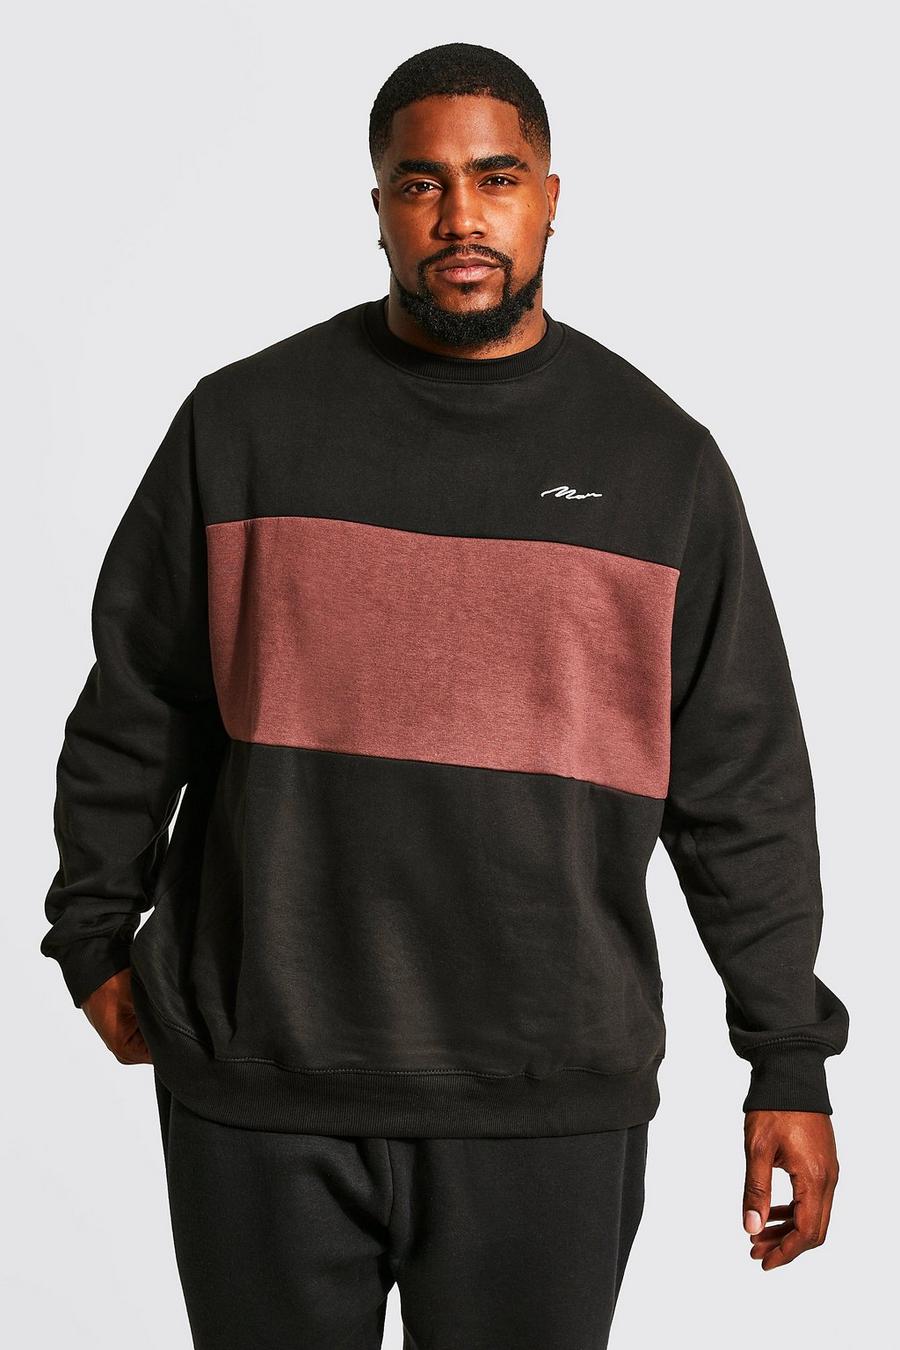 Plus Man-Dash Colorblock Sweatshirt, Braun brown